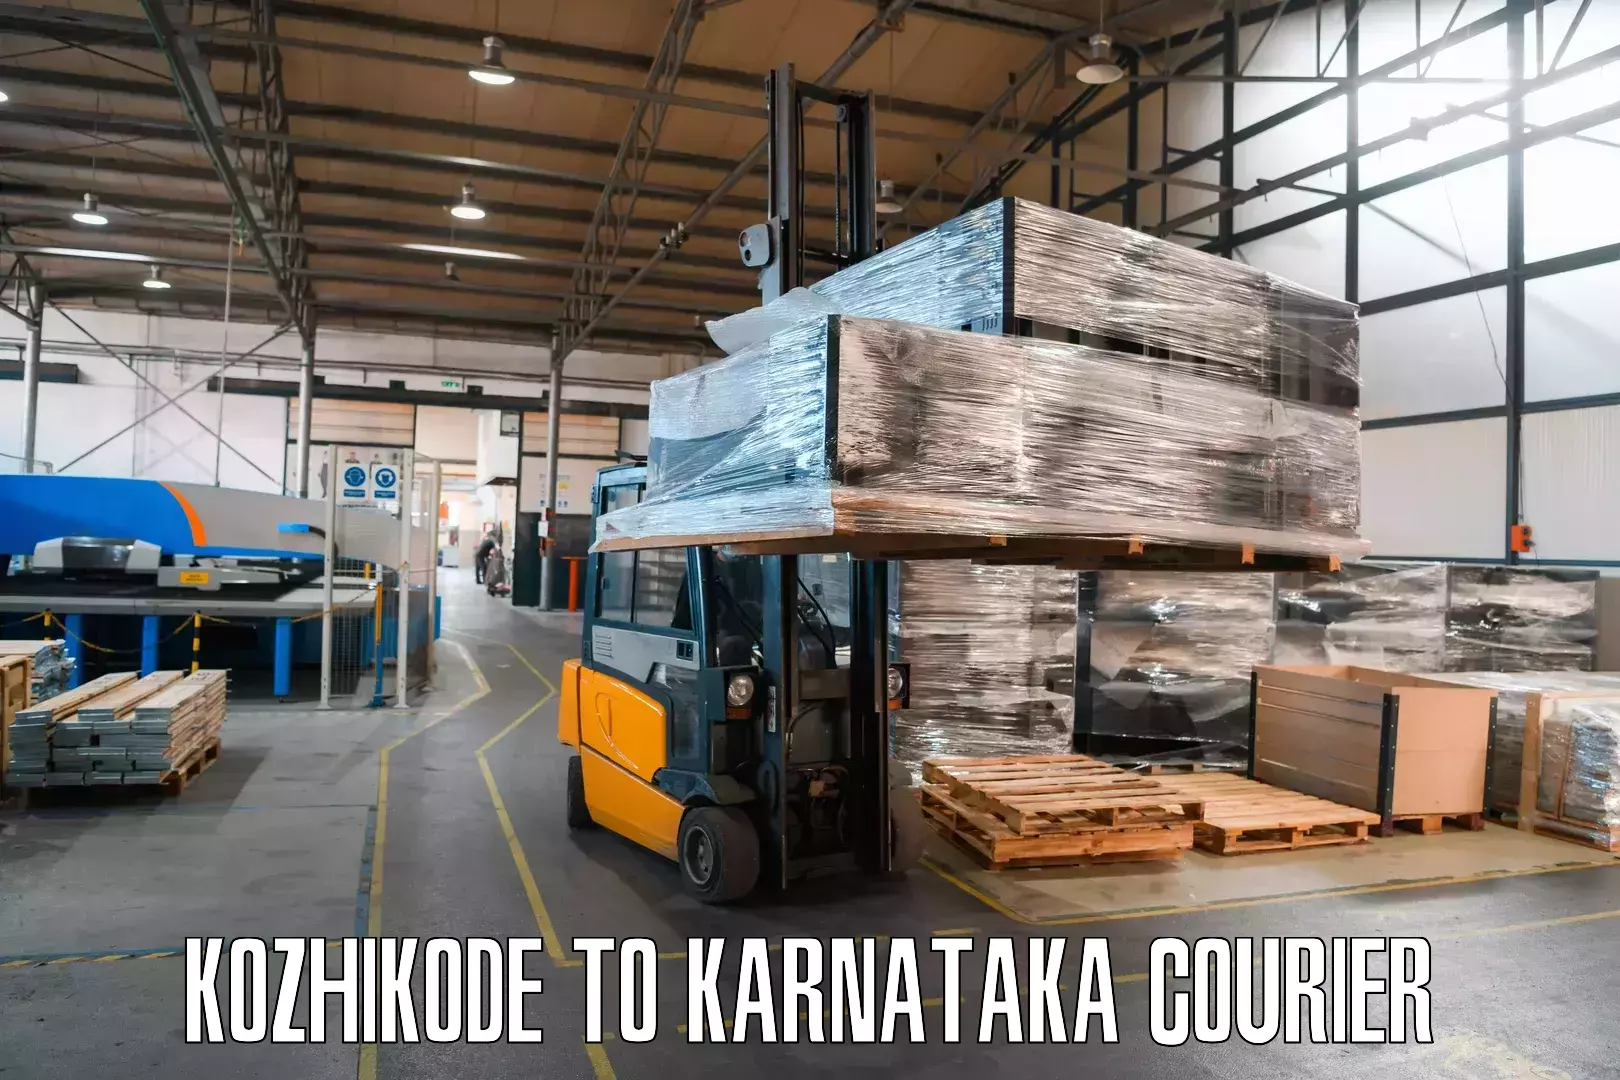 Same-day delivery options Kozhikode to Karkala